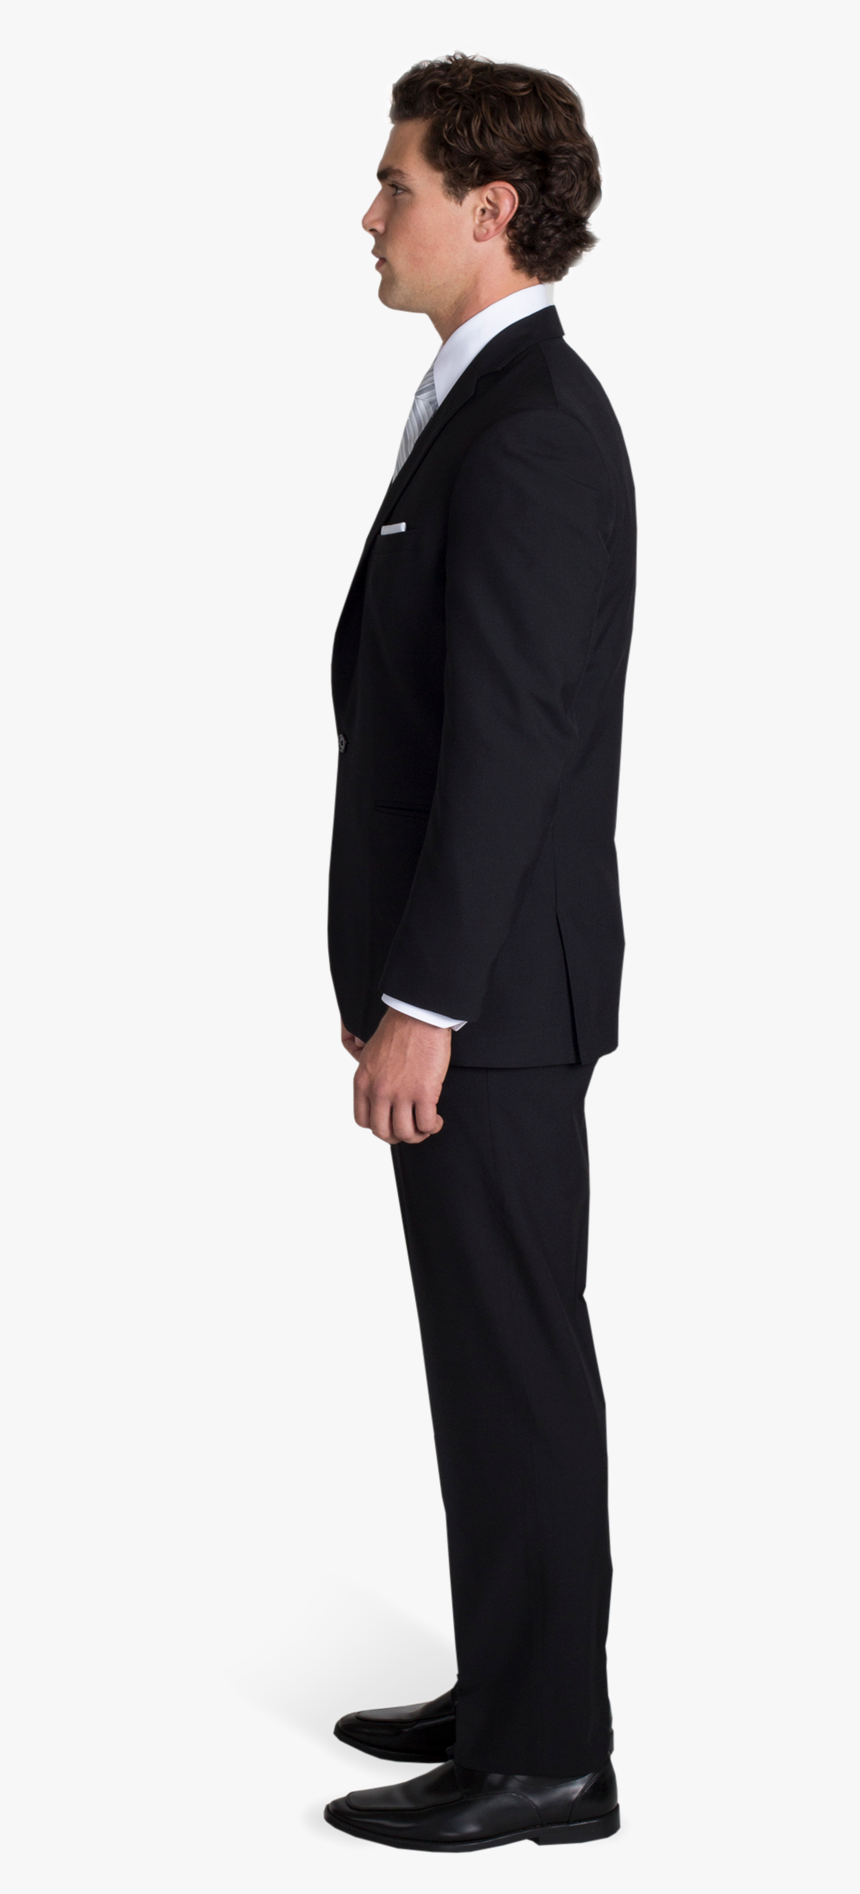 Black Notch Lapel Suit With Silver Tie - Men Suit Side View Png, Transparent Png, Free Download